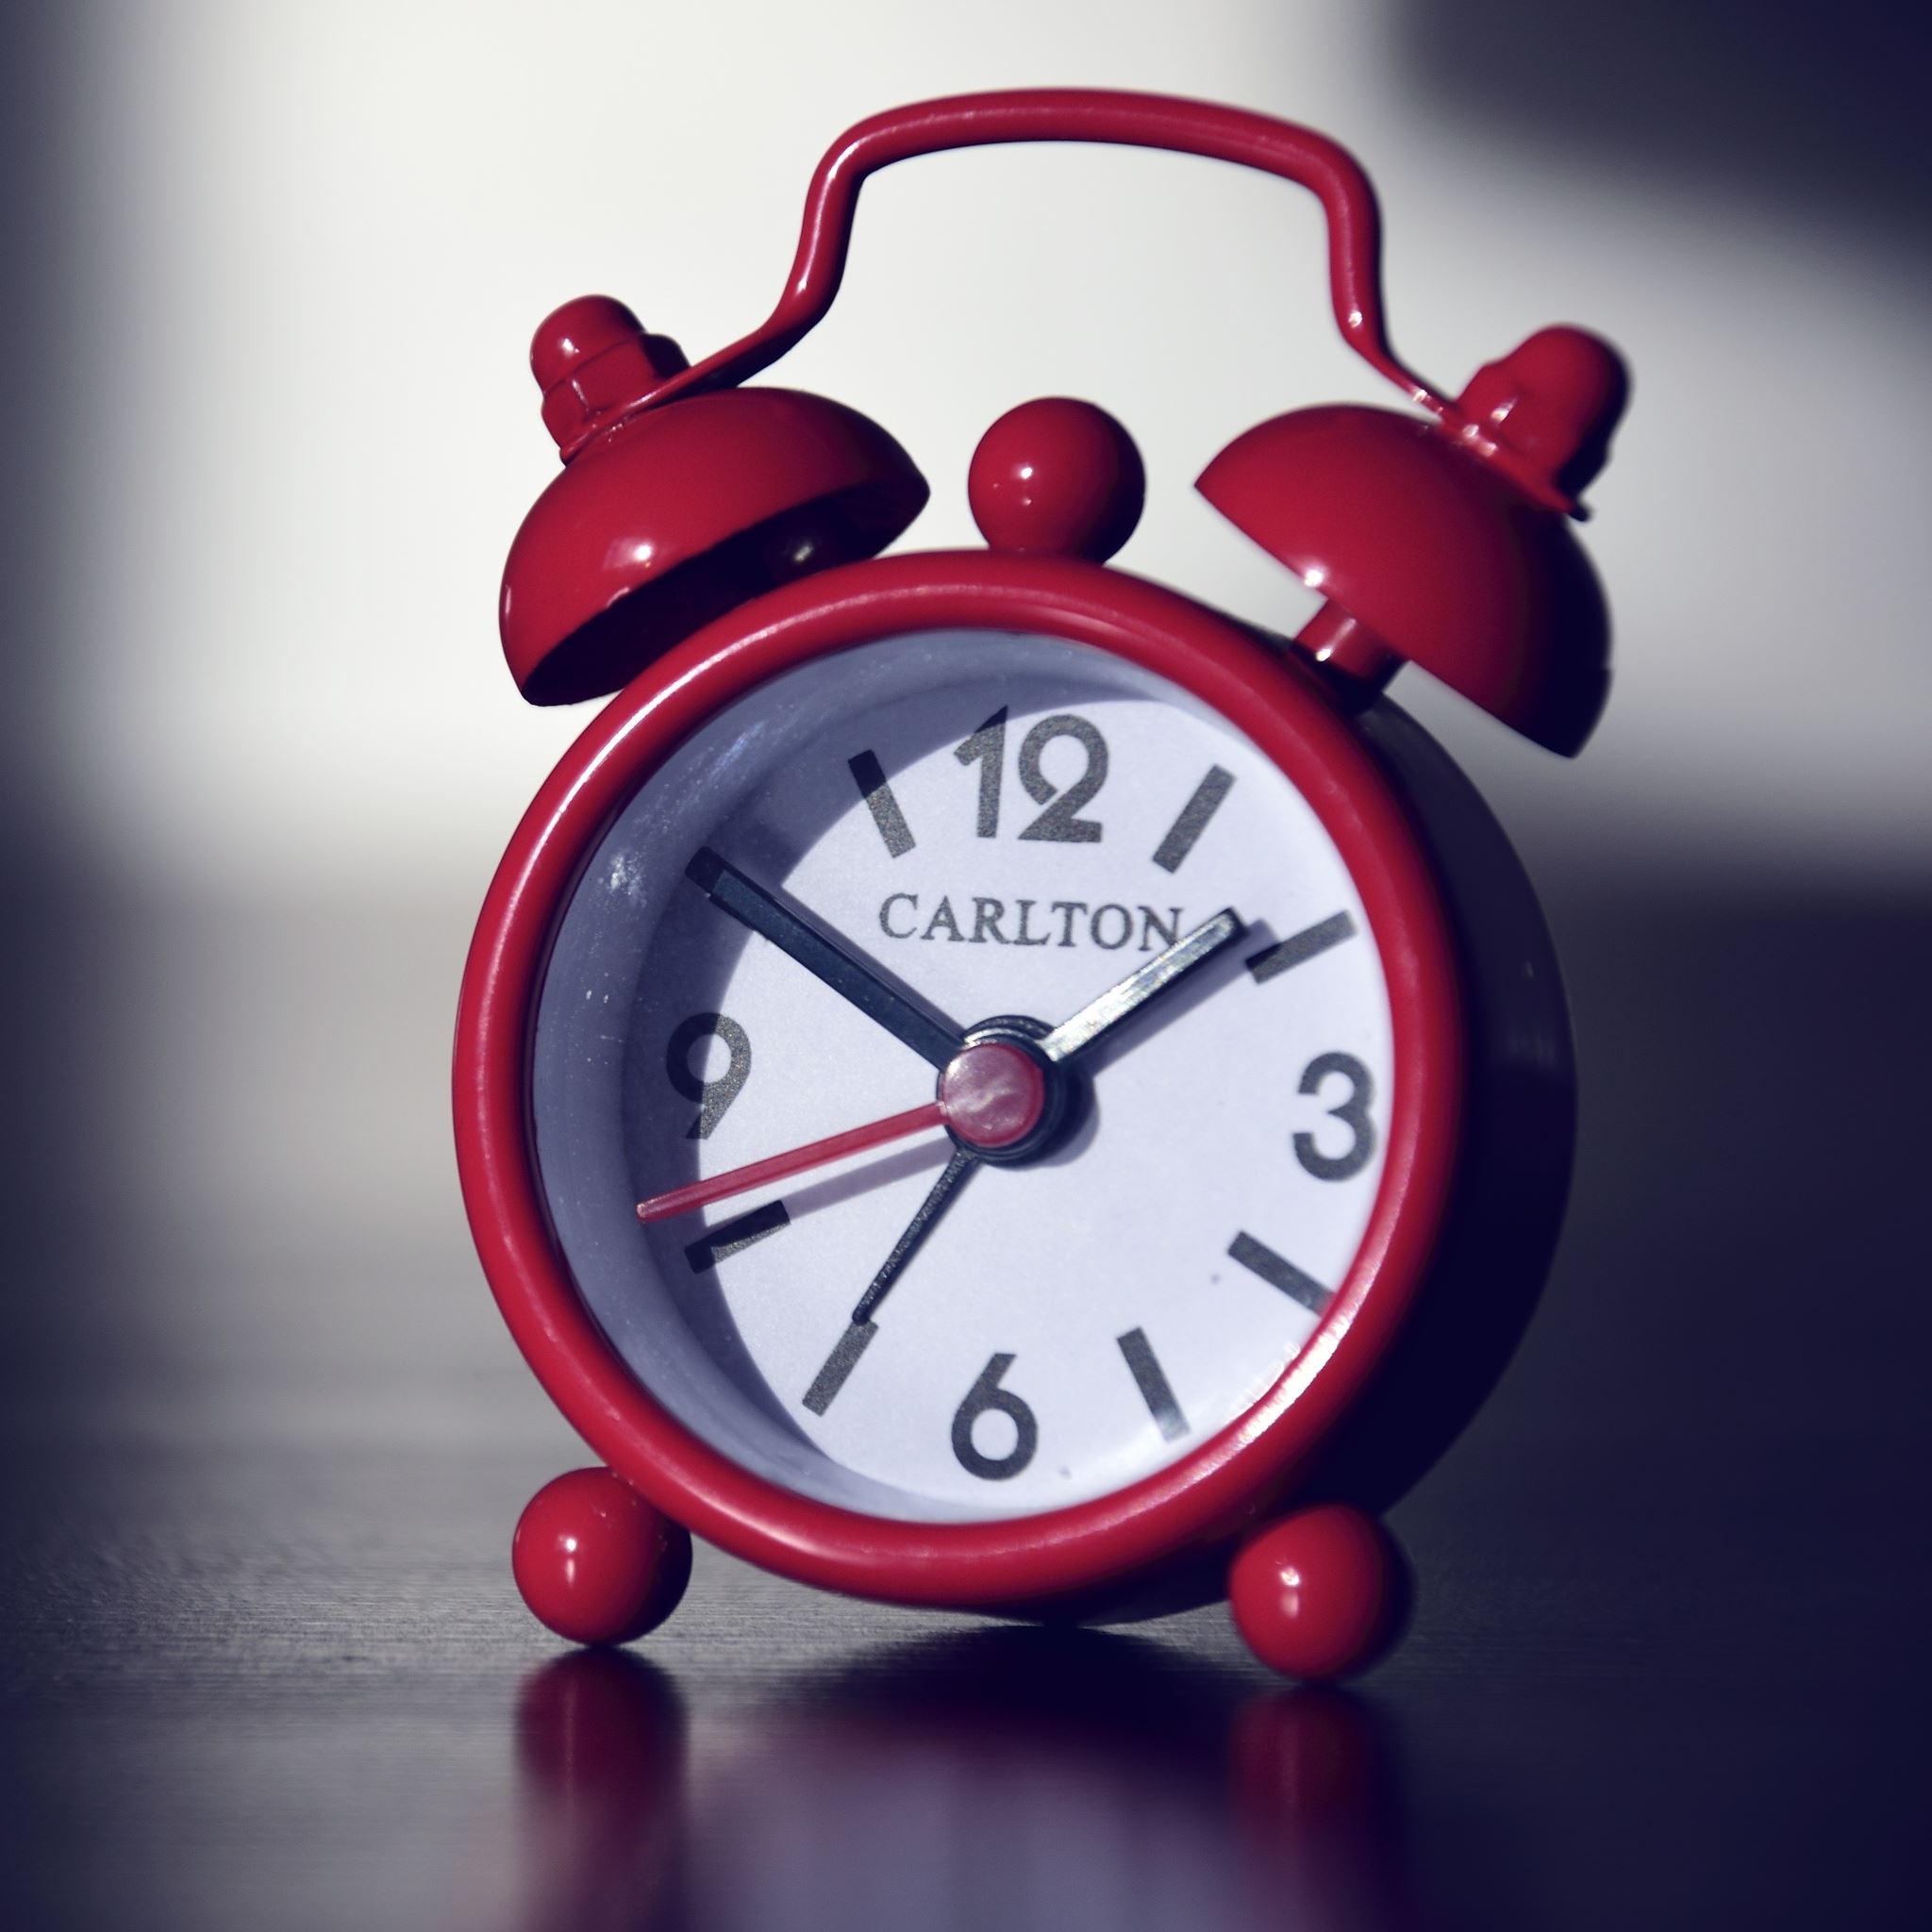 Alarm Clock Carlton Clock Face iPad Air wallpaper 